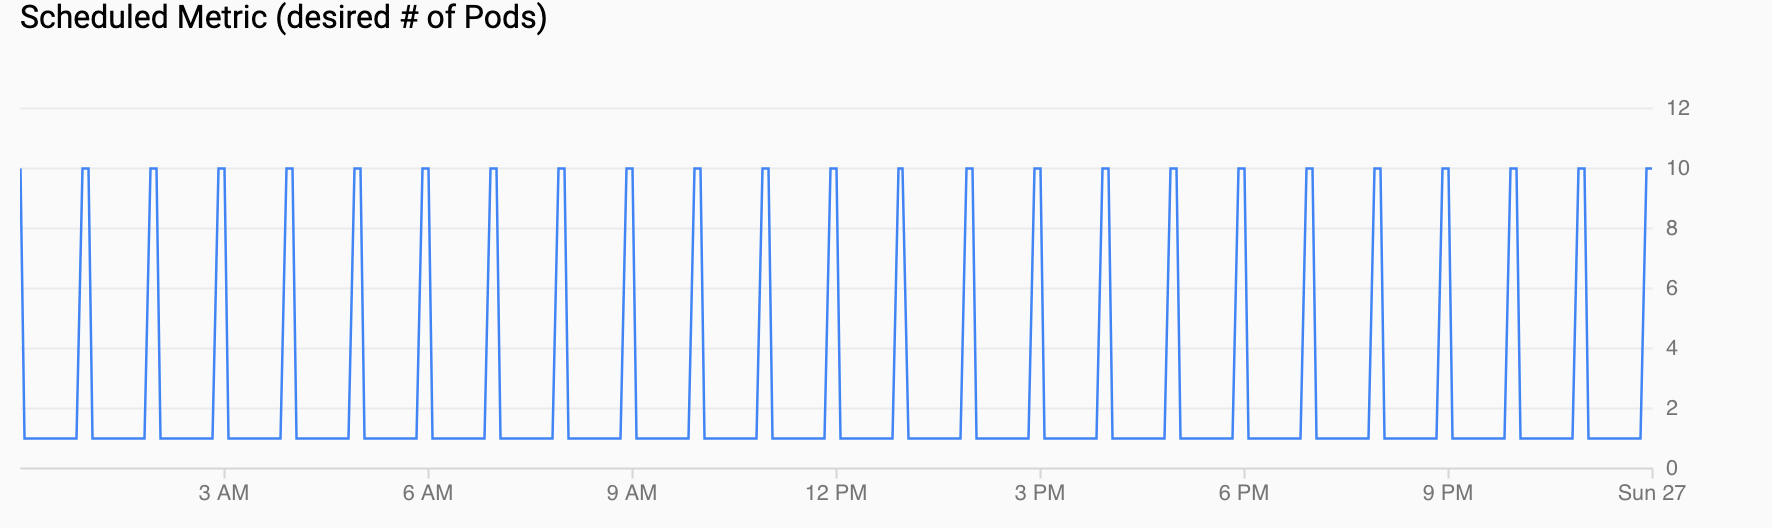 Grafik permintaan Pod, yang menampilkan lonjakan setiap jam.